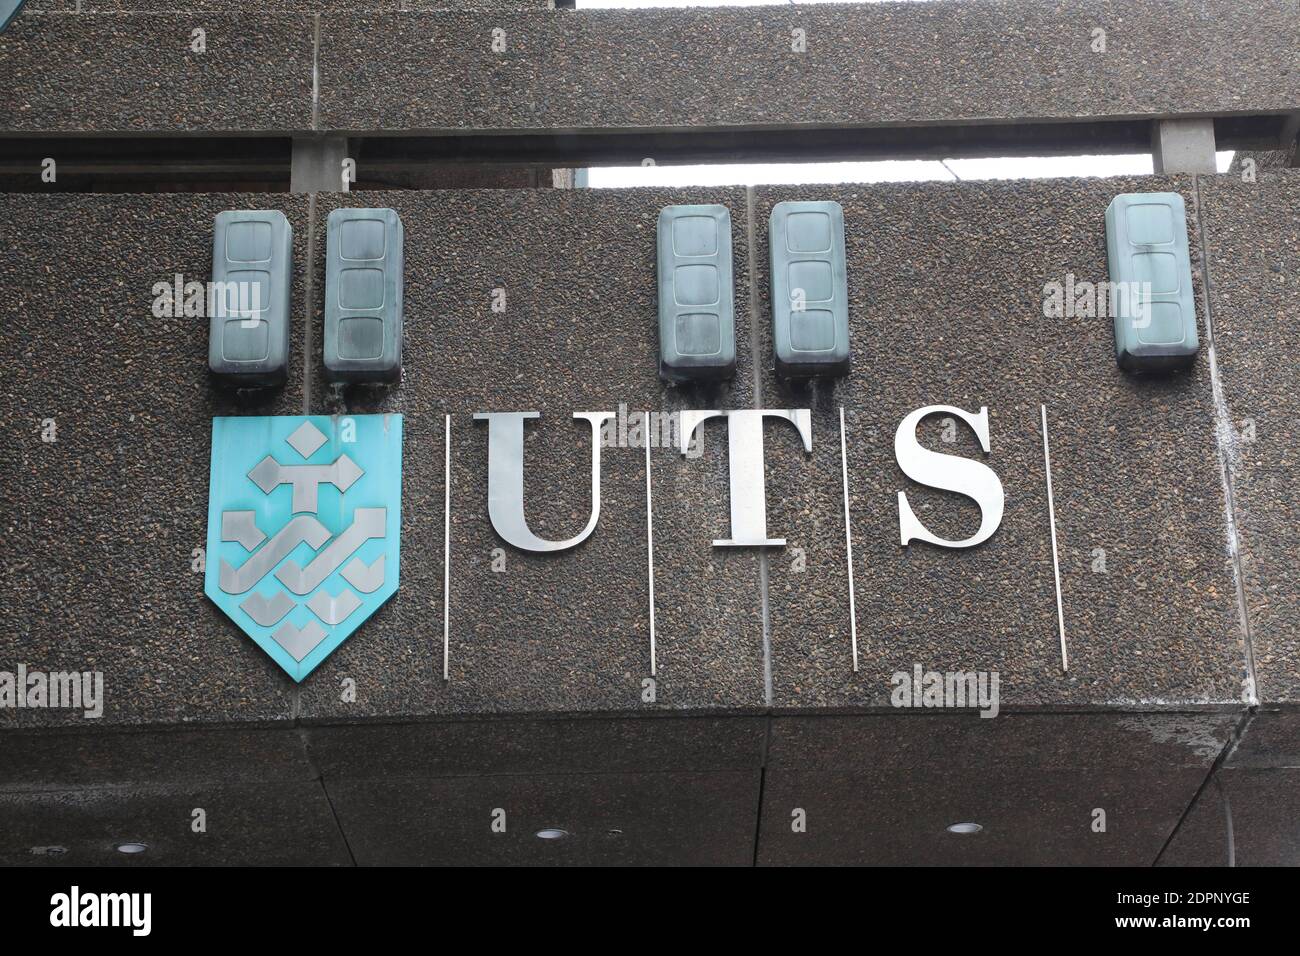 UTS (University of Technology Sydney) on Broadway, Sydney. Stock Photo